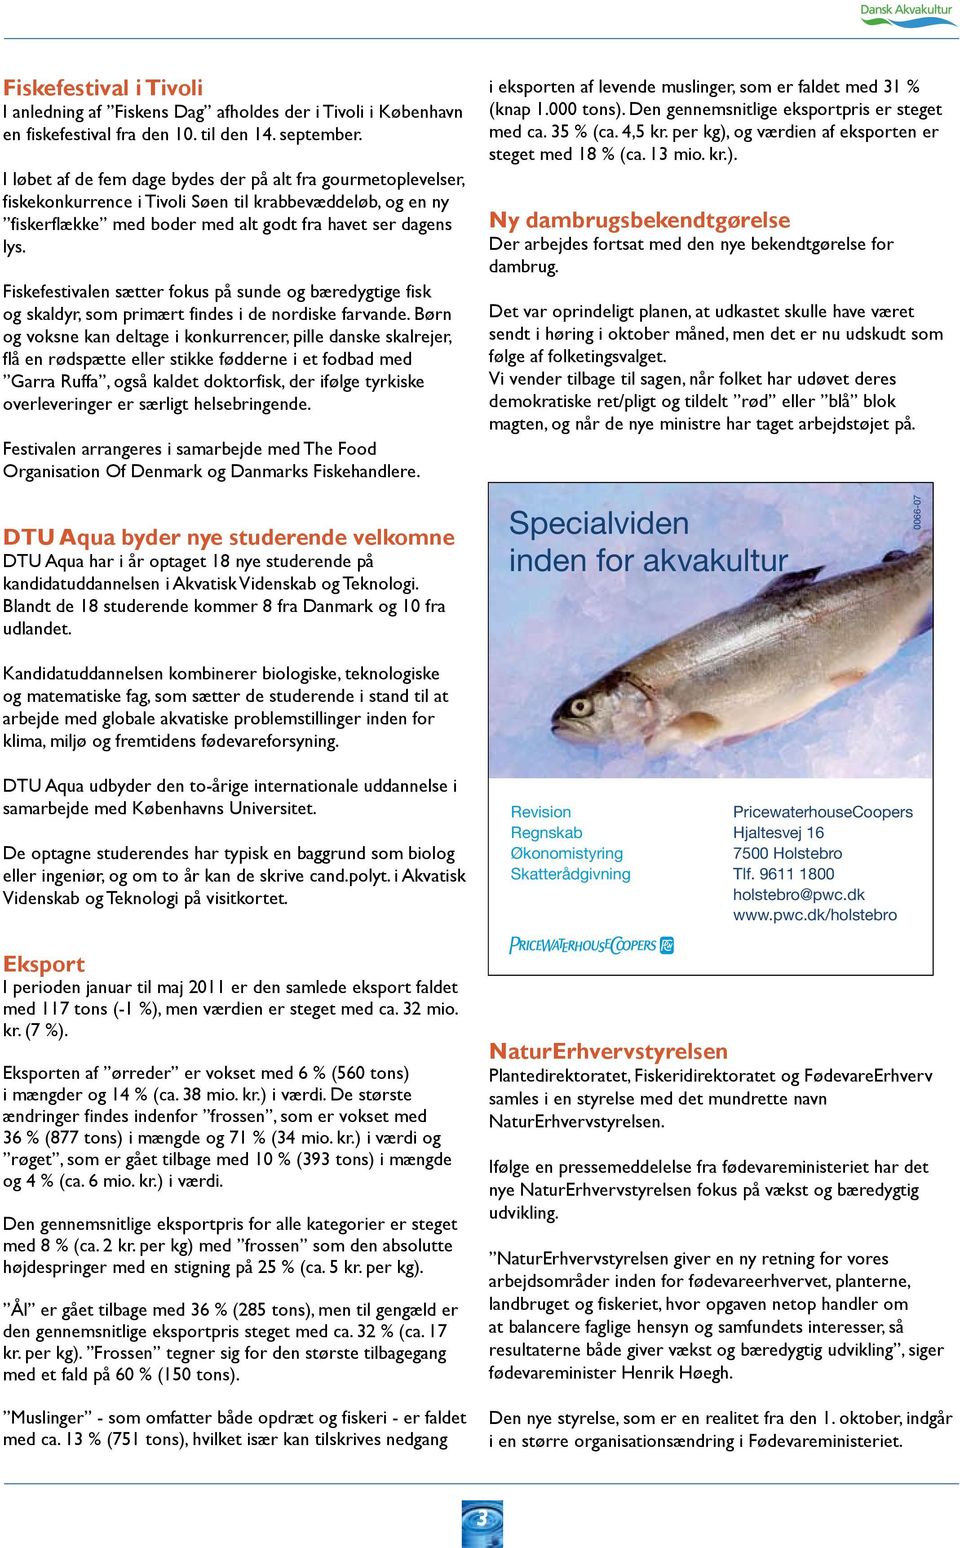 Fiskens Dag afholdes som led i kampagnen 2 gange om ugen, der gennemføres  med støtte fra Den Europæiske Fiskerifond og Fødevareministeriet. - PDF  Free Download